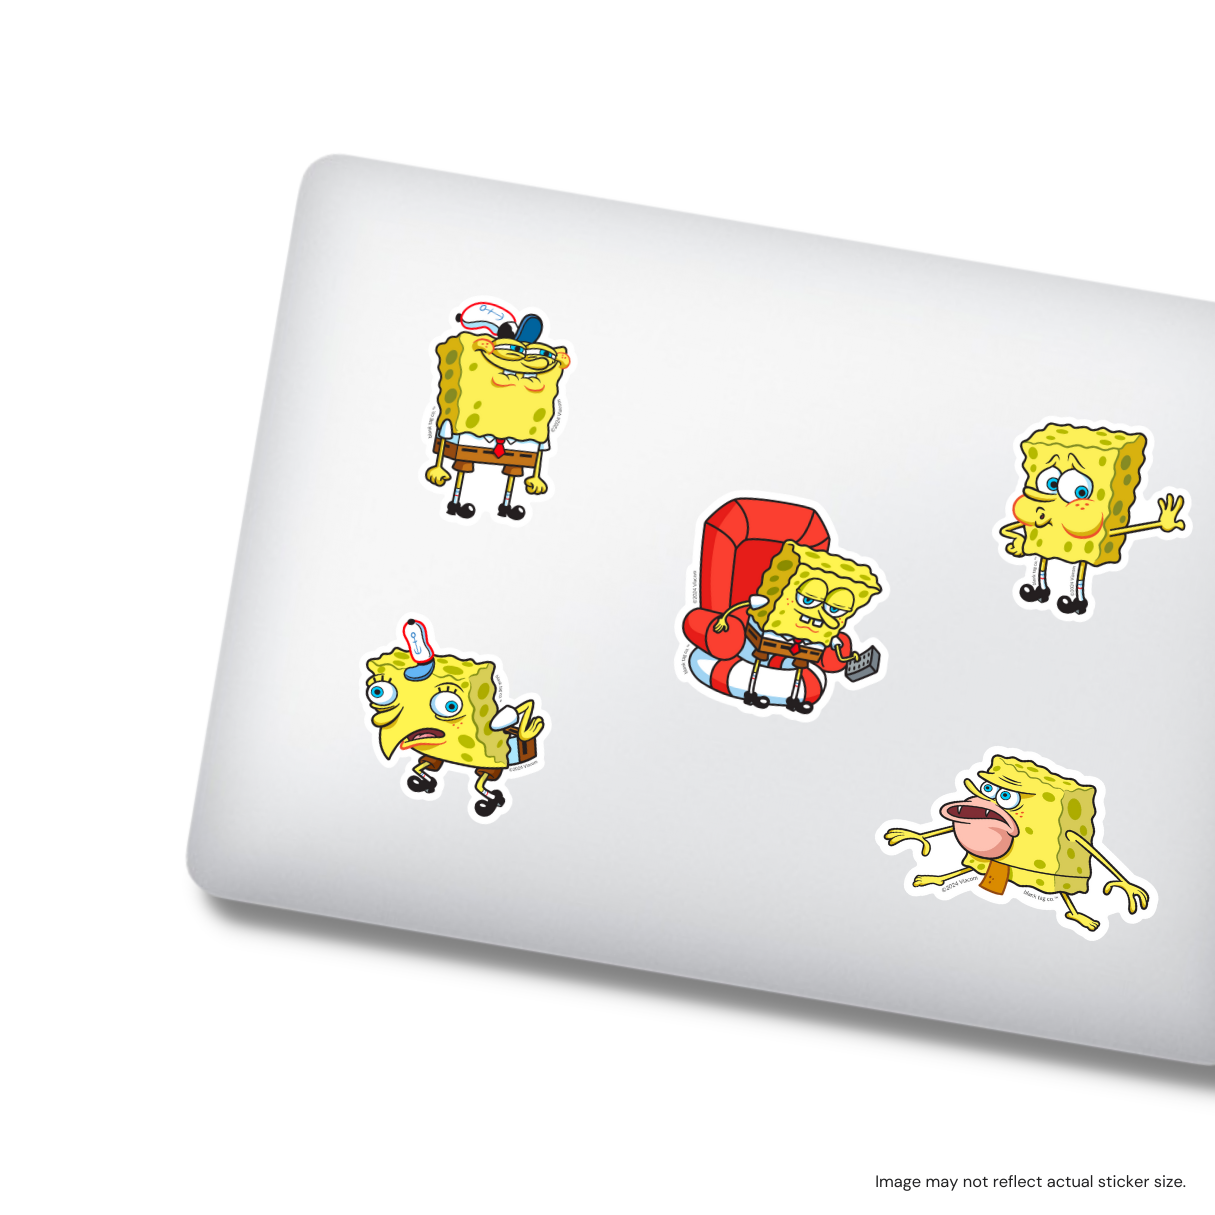 The Tired SpongeBob Meme Sticker